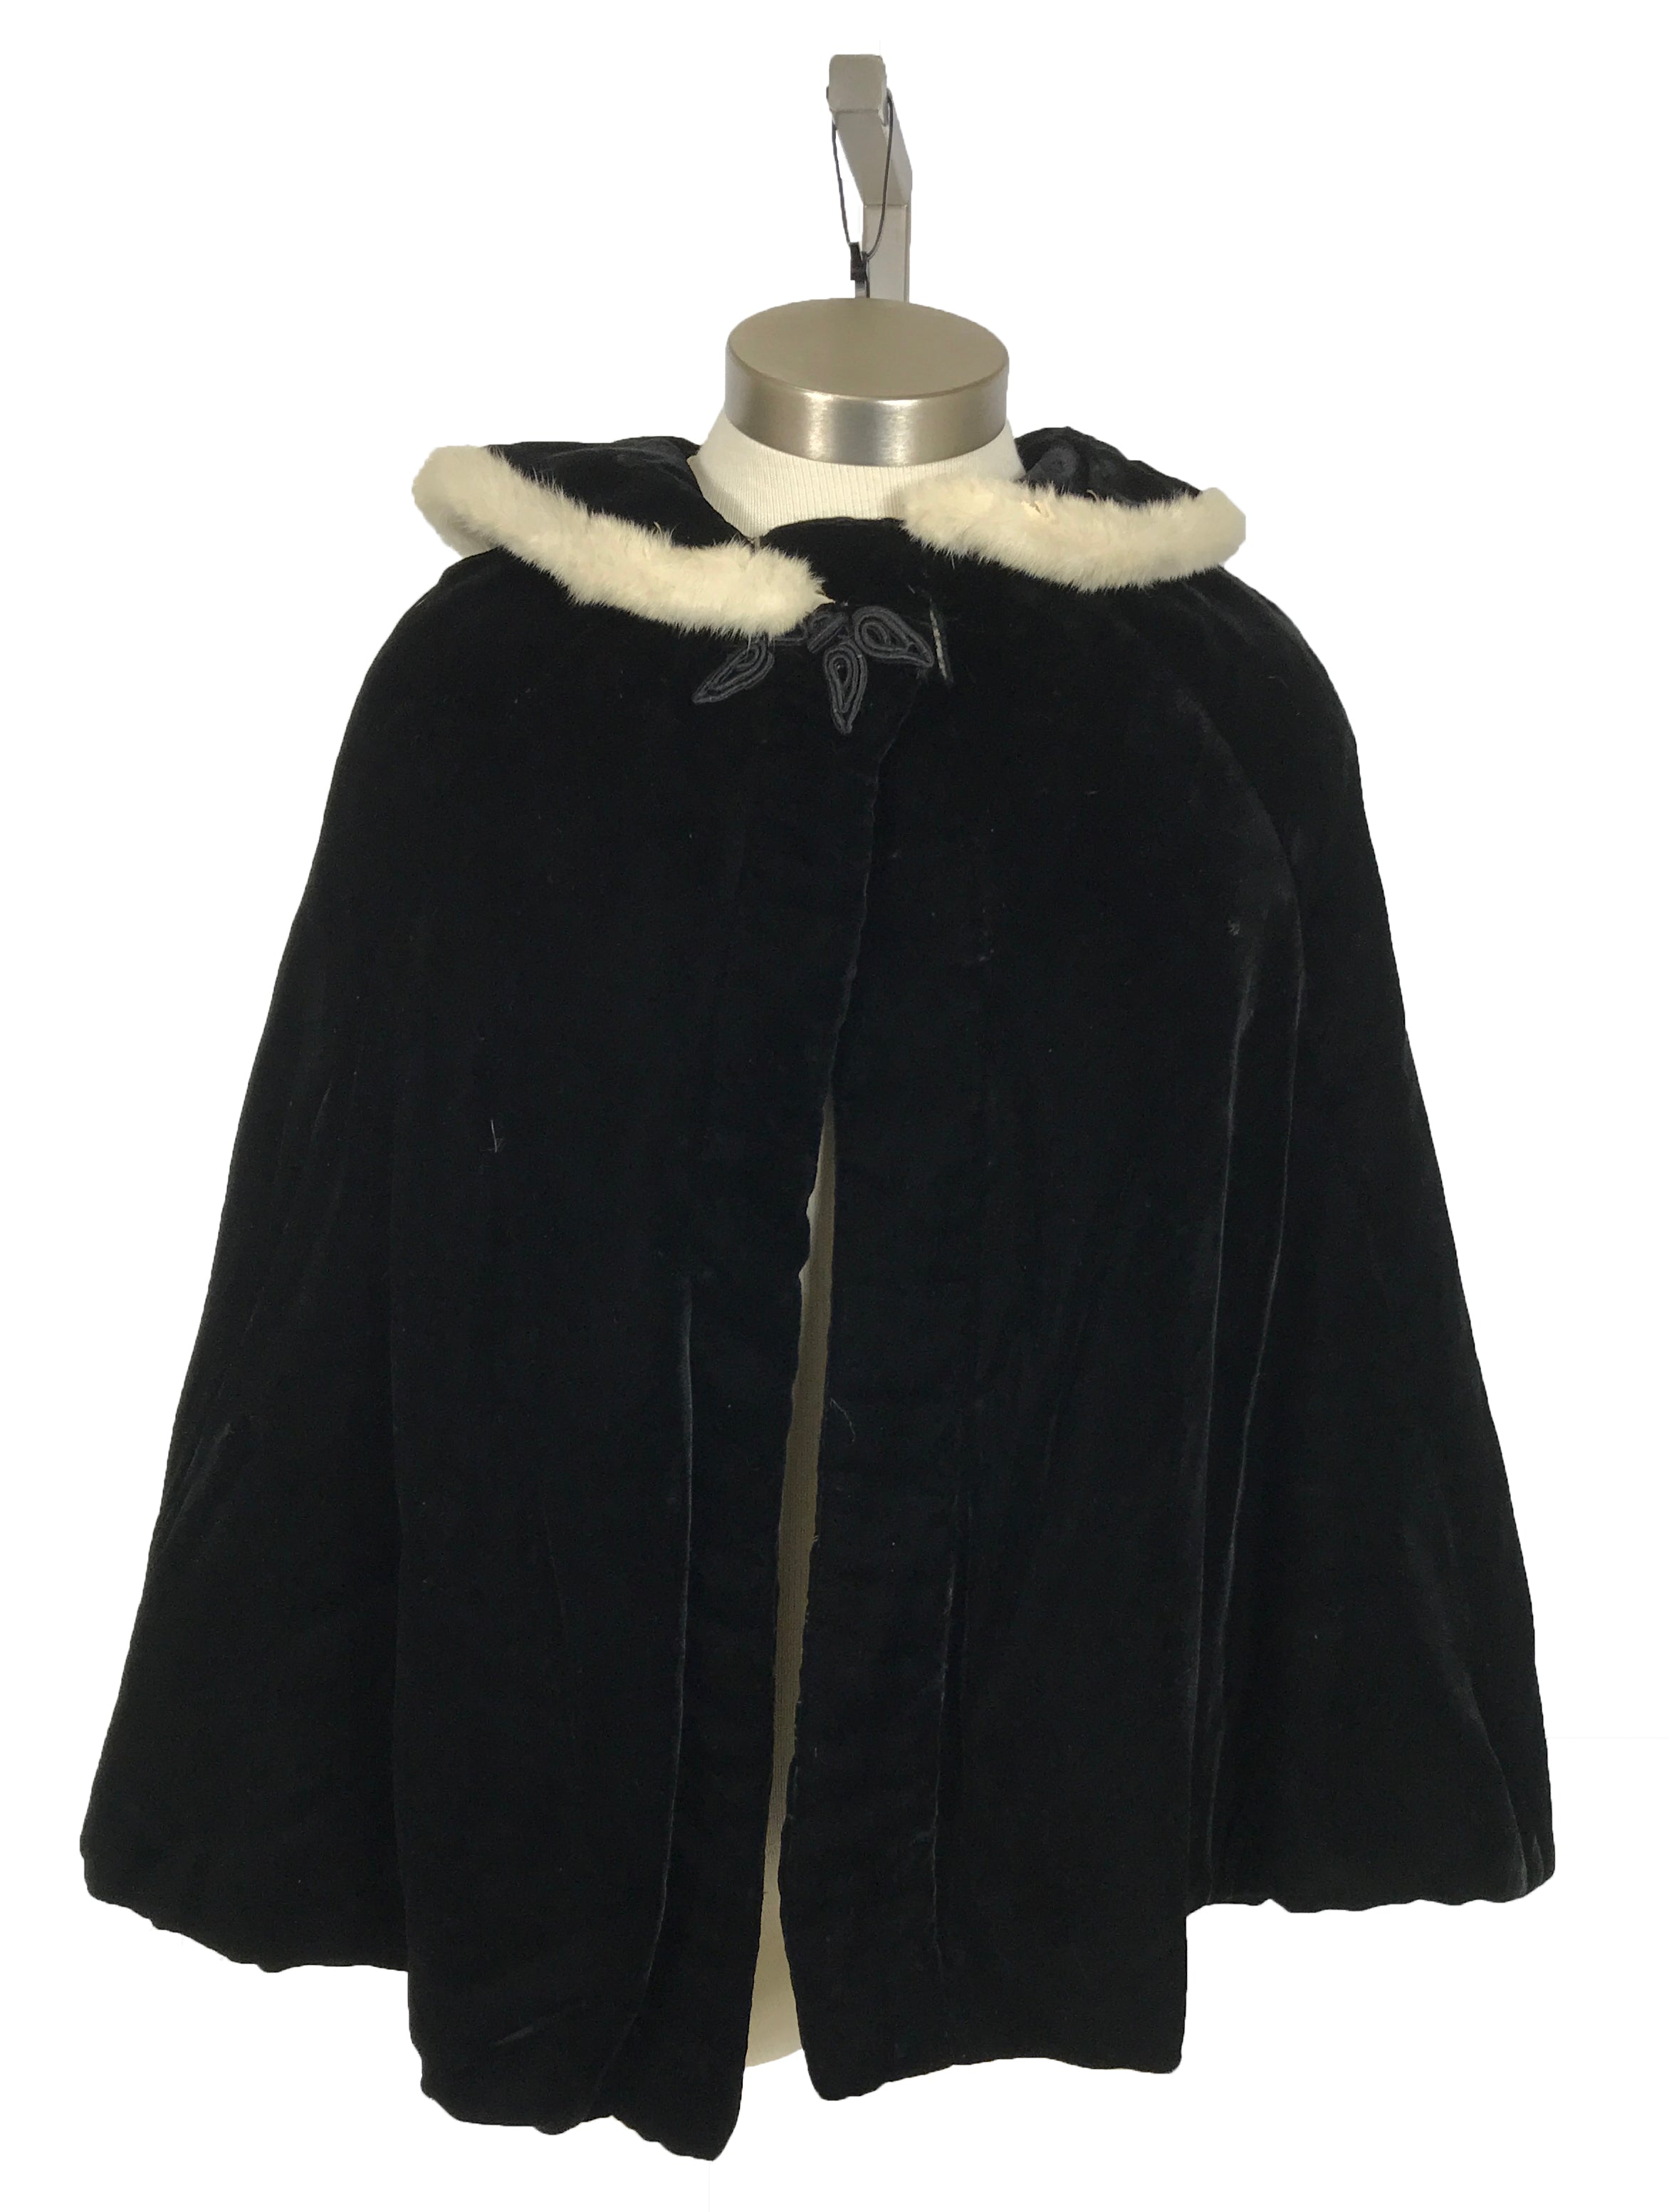 Vintage Black Velvet Cape with Fur-lined Collar